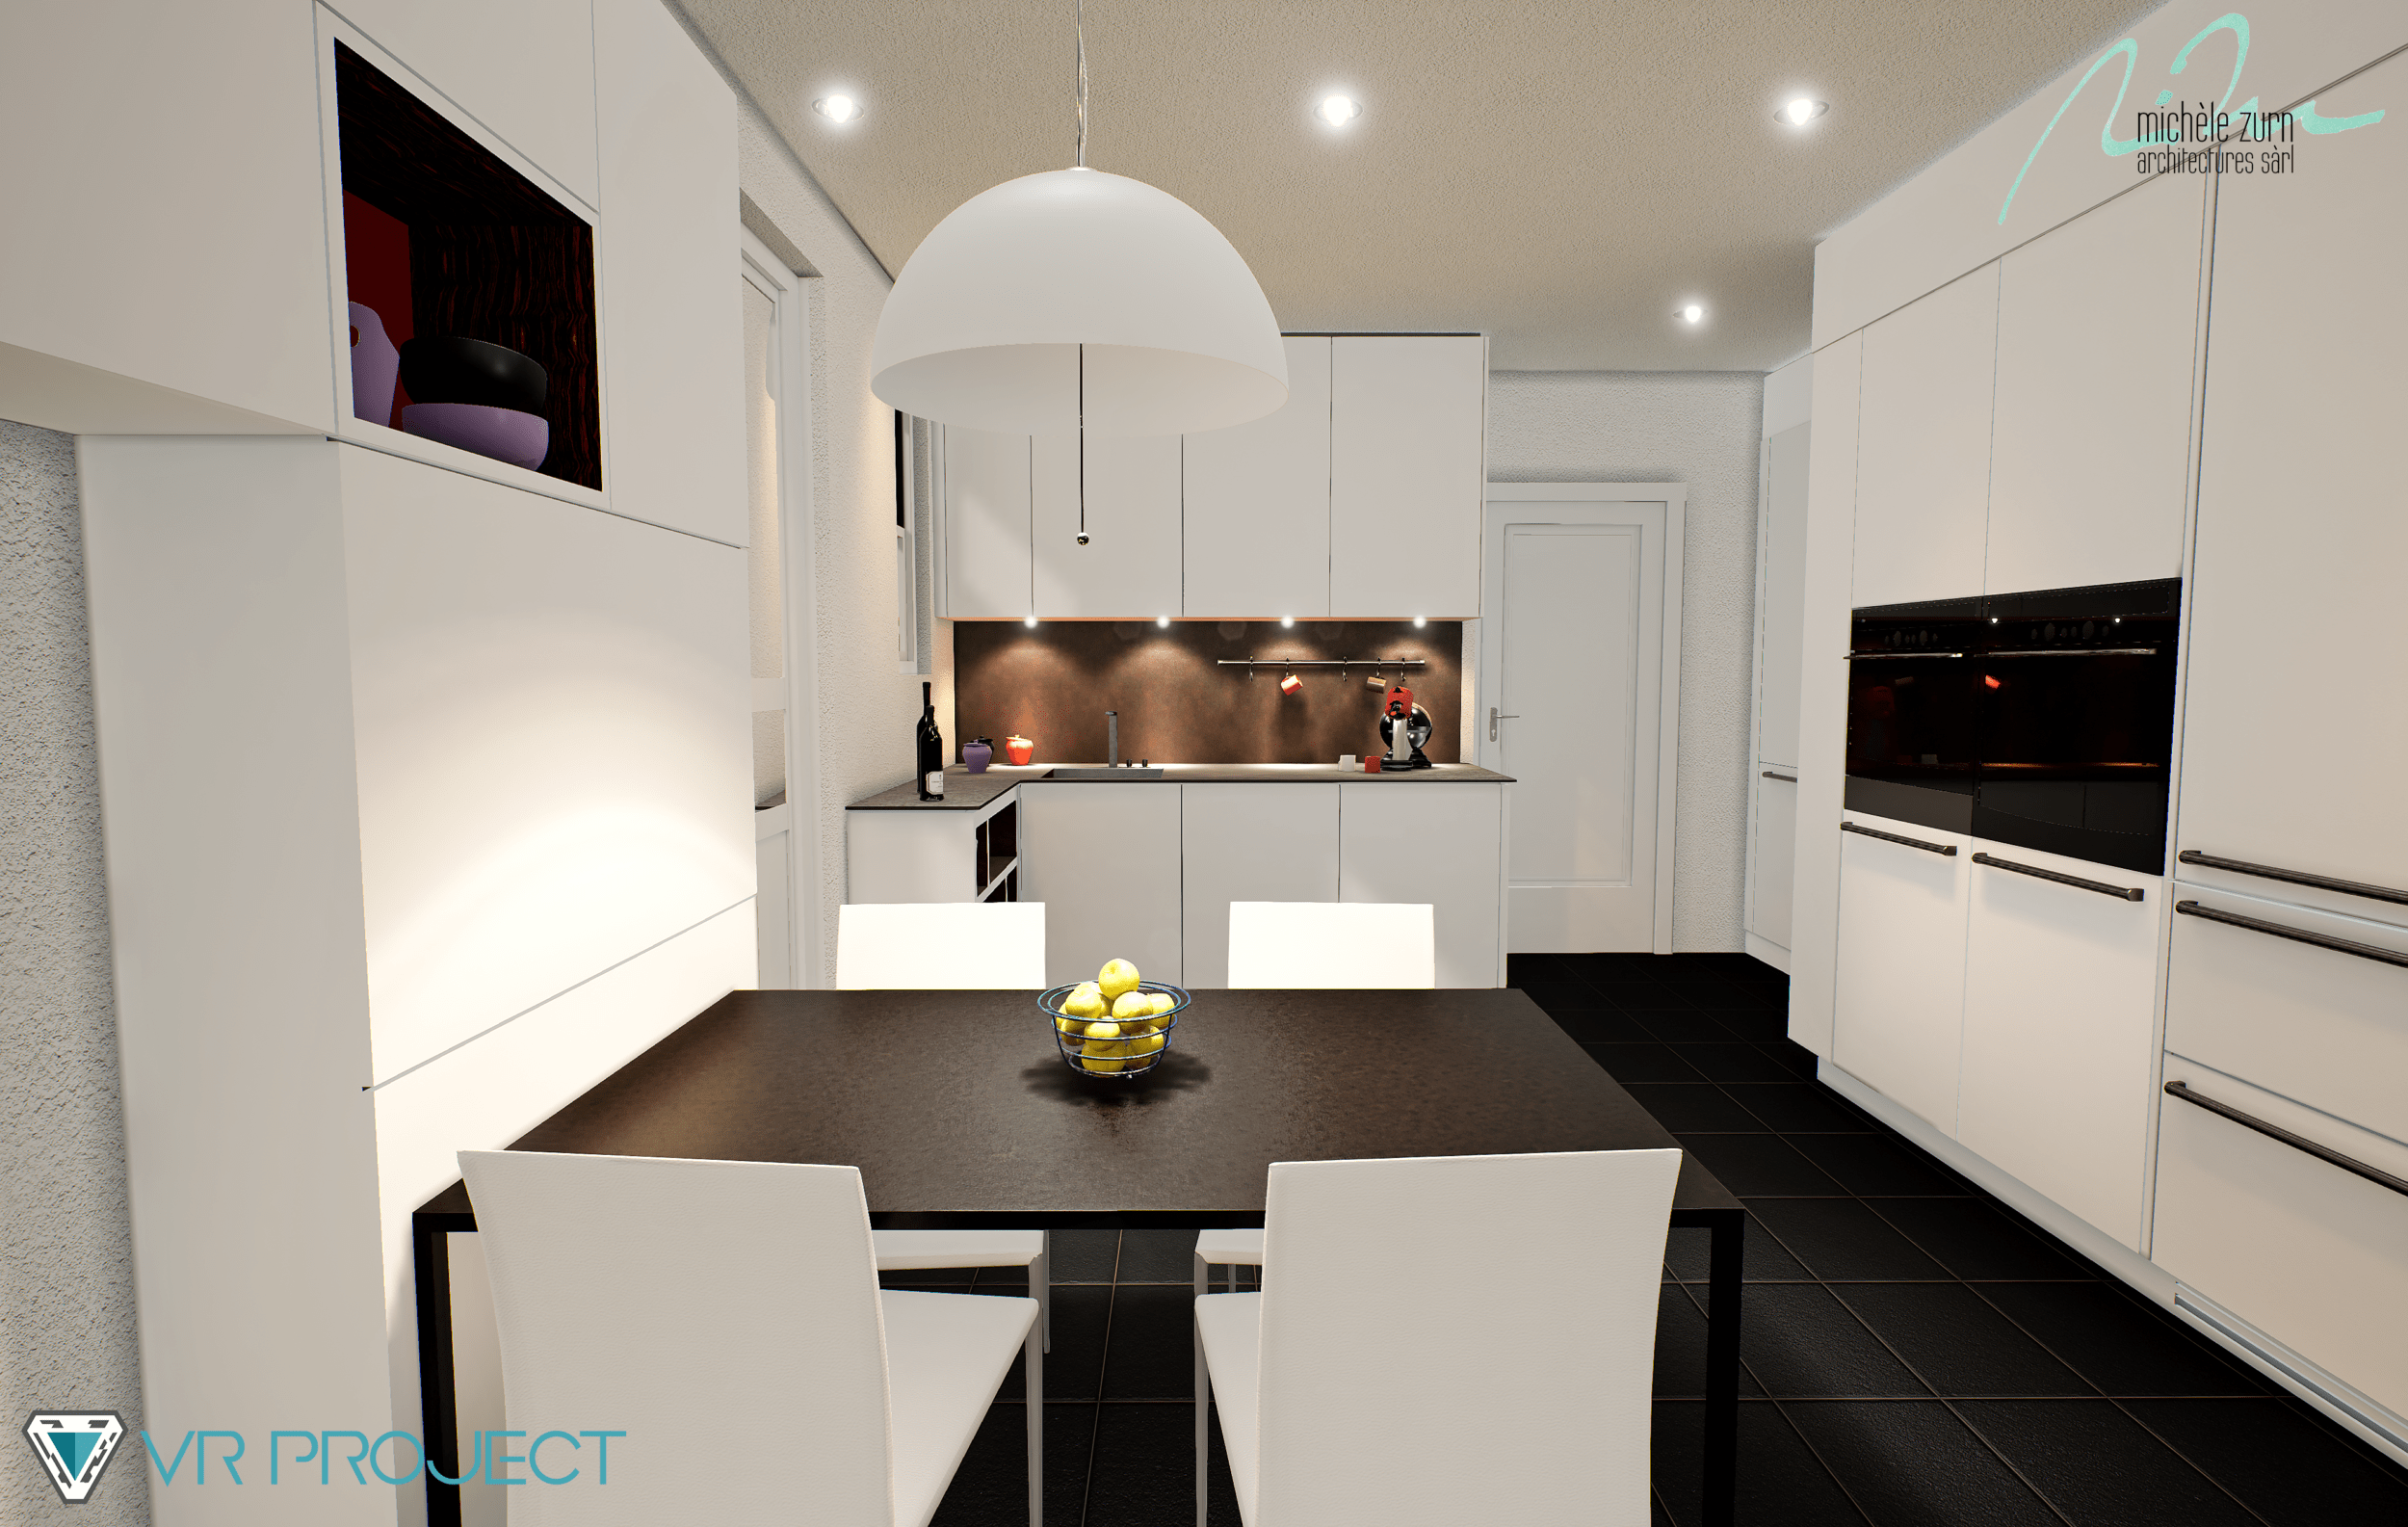 3D modeling - Kitchen renovation rendering